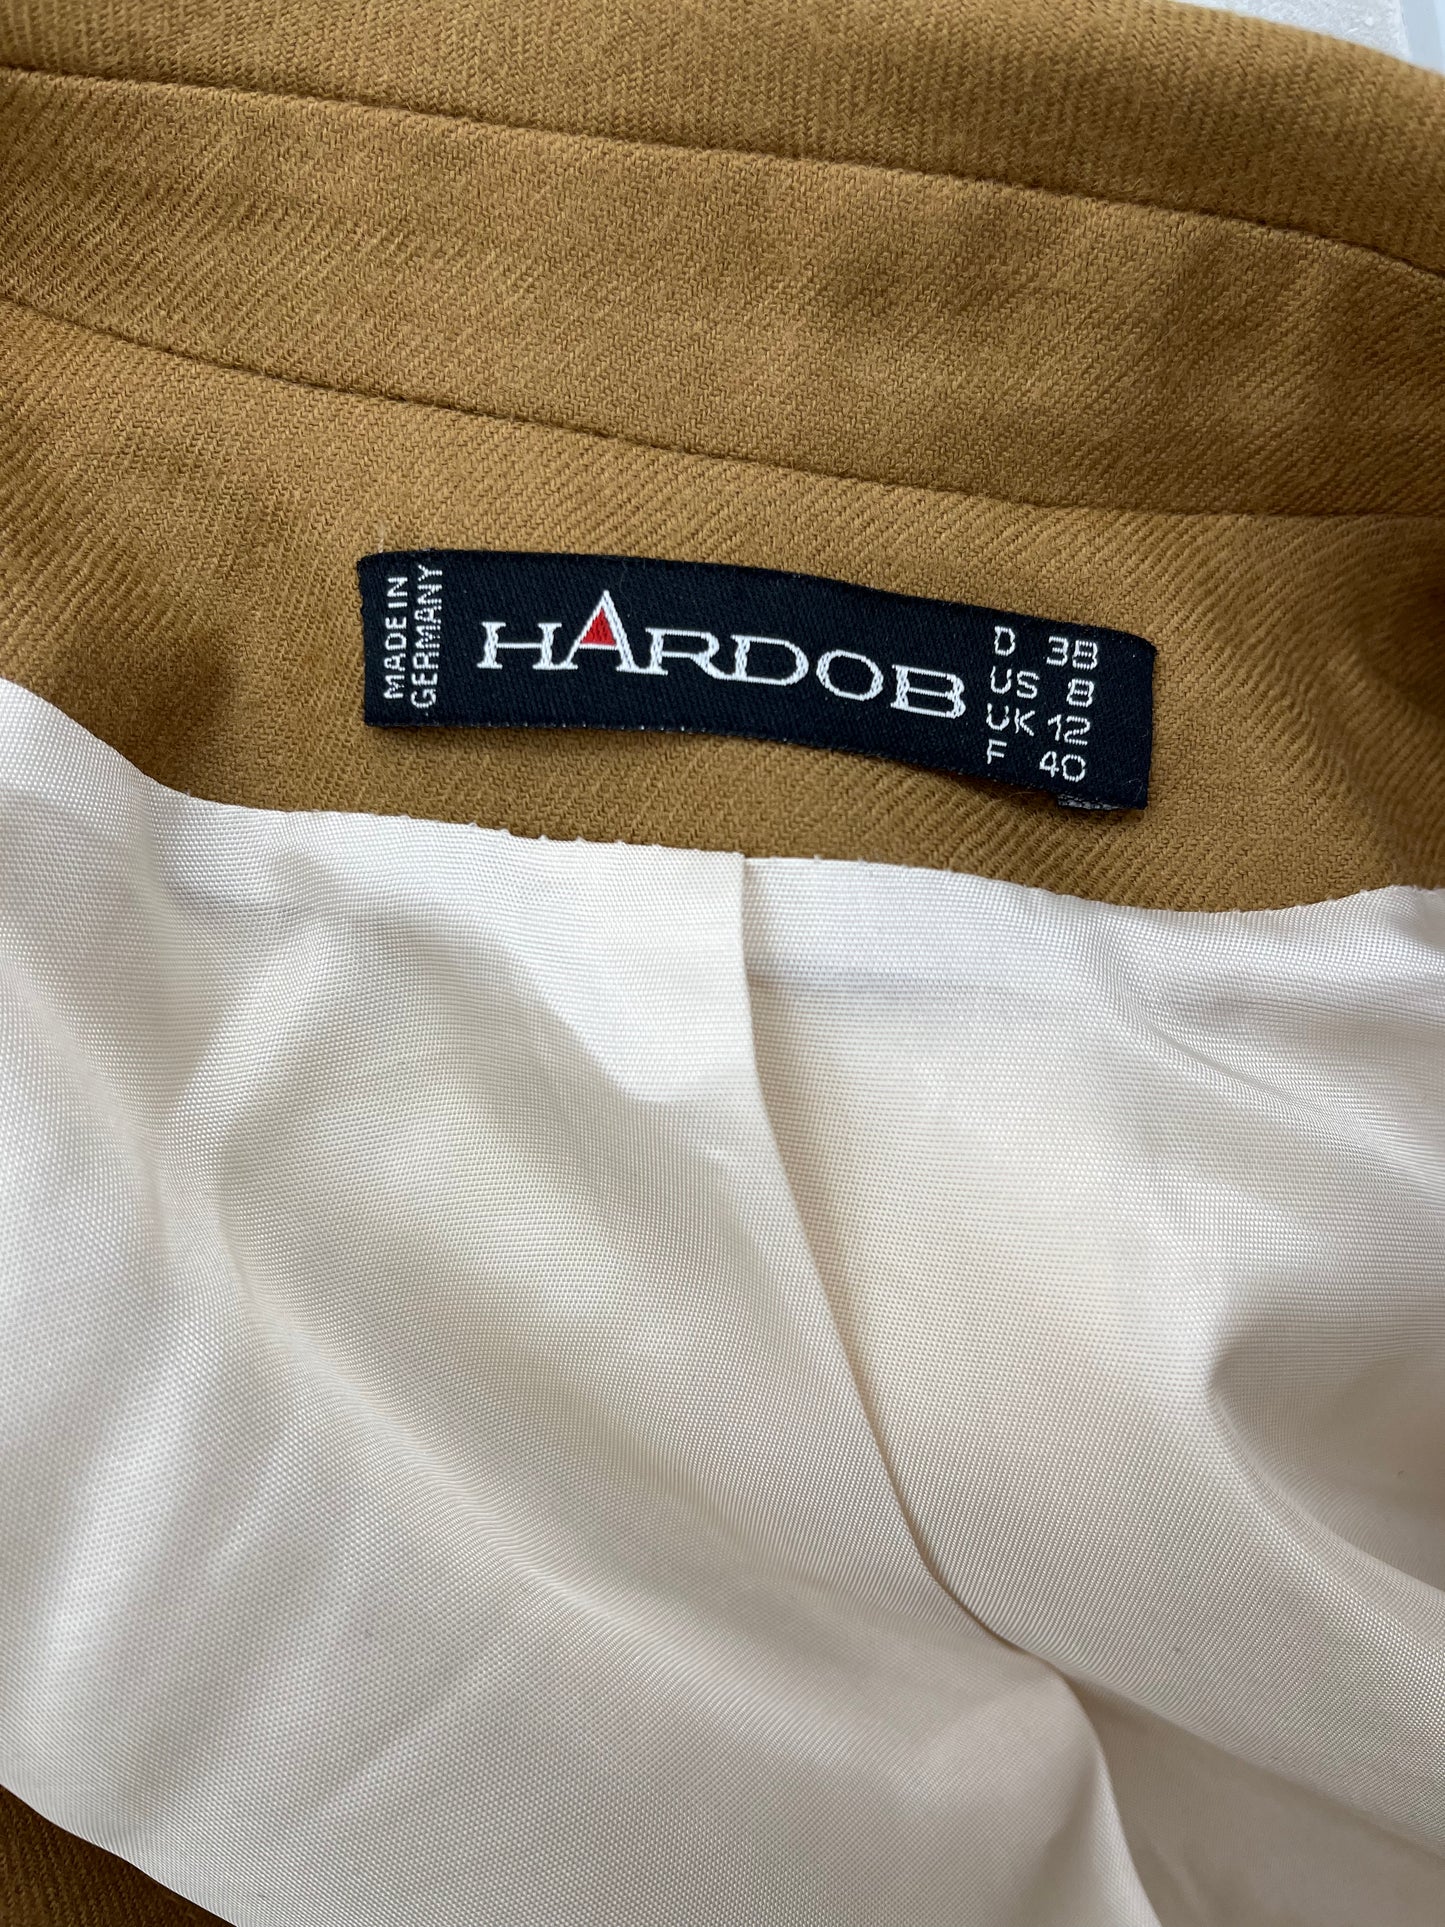 Hardob, kermanvalkoinen villajakku, 90-2000-luku, koko 38-40